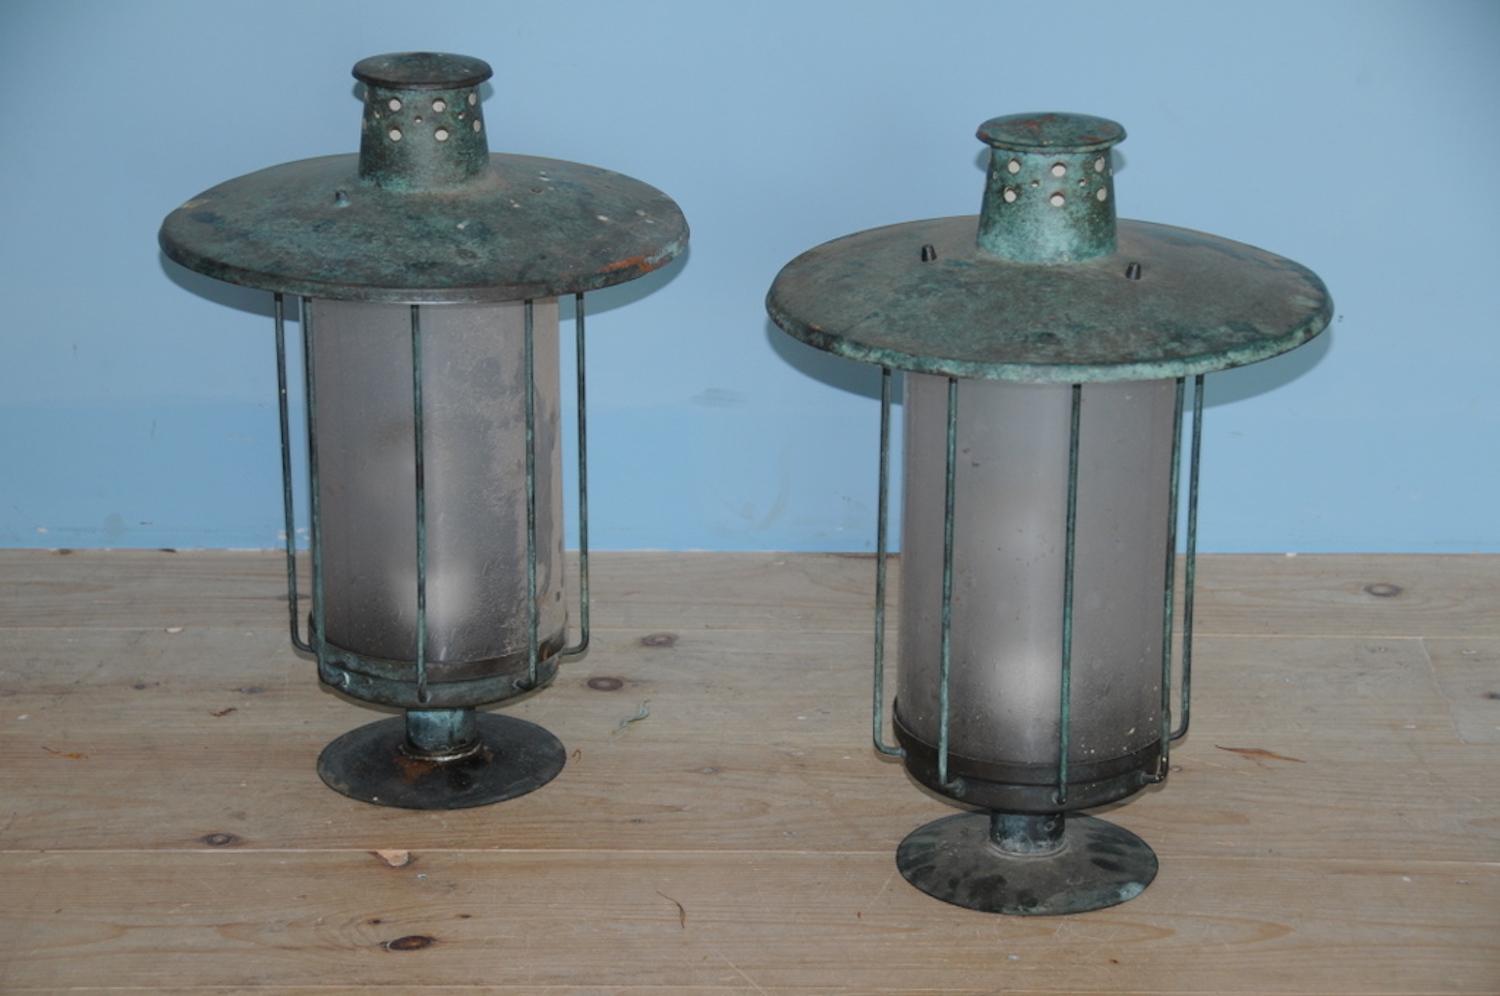 Mid-Century Modern Post Lanterns, a Pair, Origin: Sweden, Circa 1920-1930